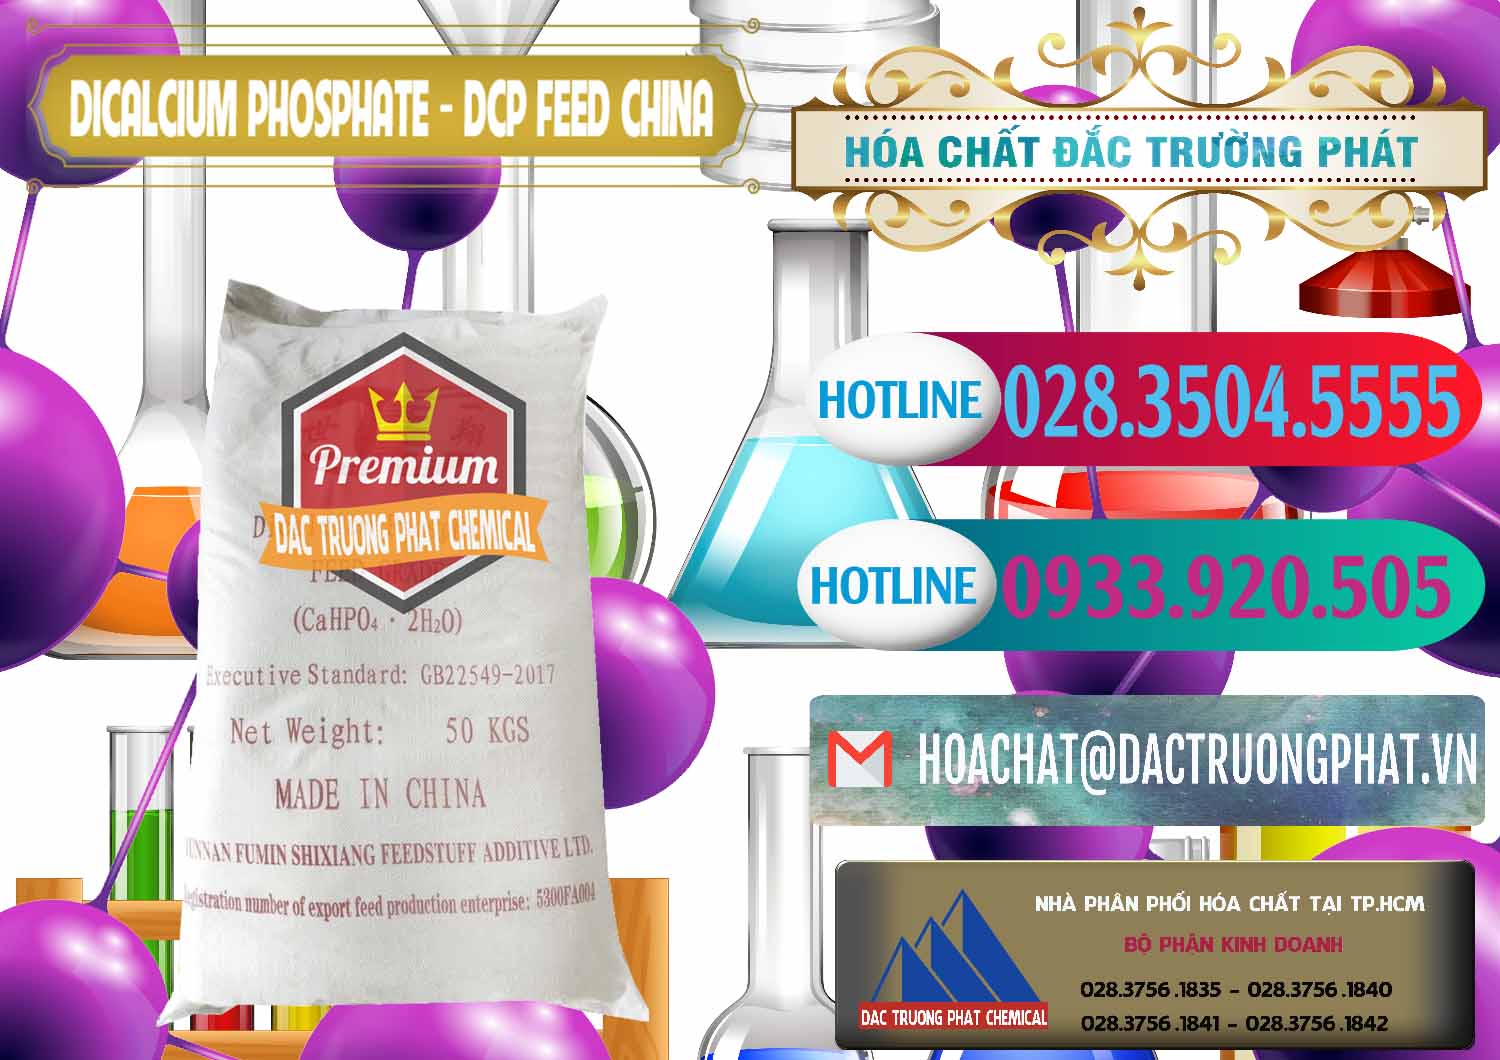 Nơi phân phối _ bán Dicalcium Phosphate - DCP Feed Grade Trung Quốc China - 0296 - Cty chuyên bán - cung cấp hóa chất tại TP.HCM - truongphat.vn